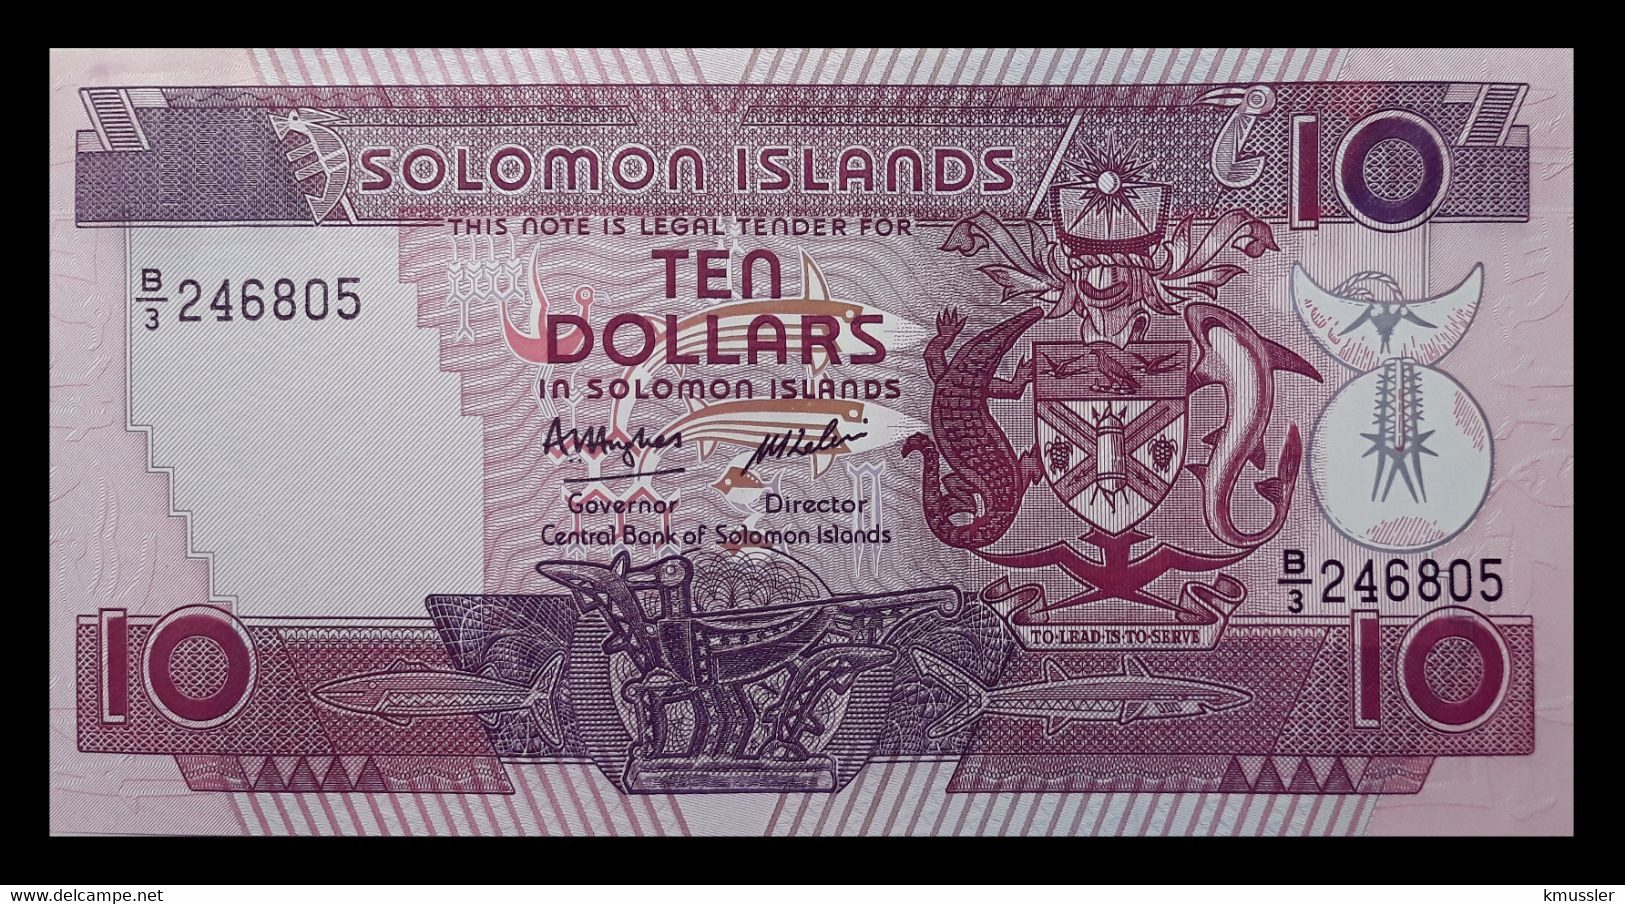 # # # Banknote Von Den Solomon-Inseln 10 Dollars UNC # # # - Salomonseilanden